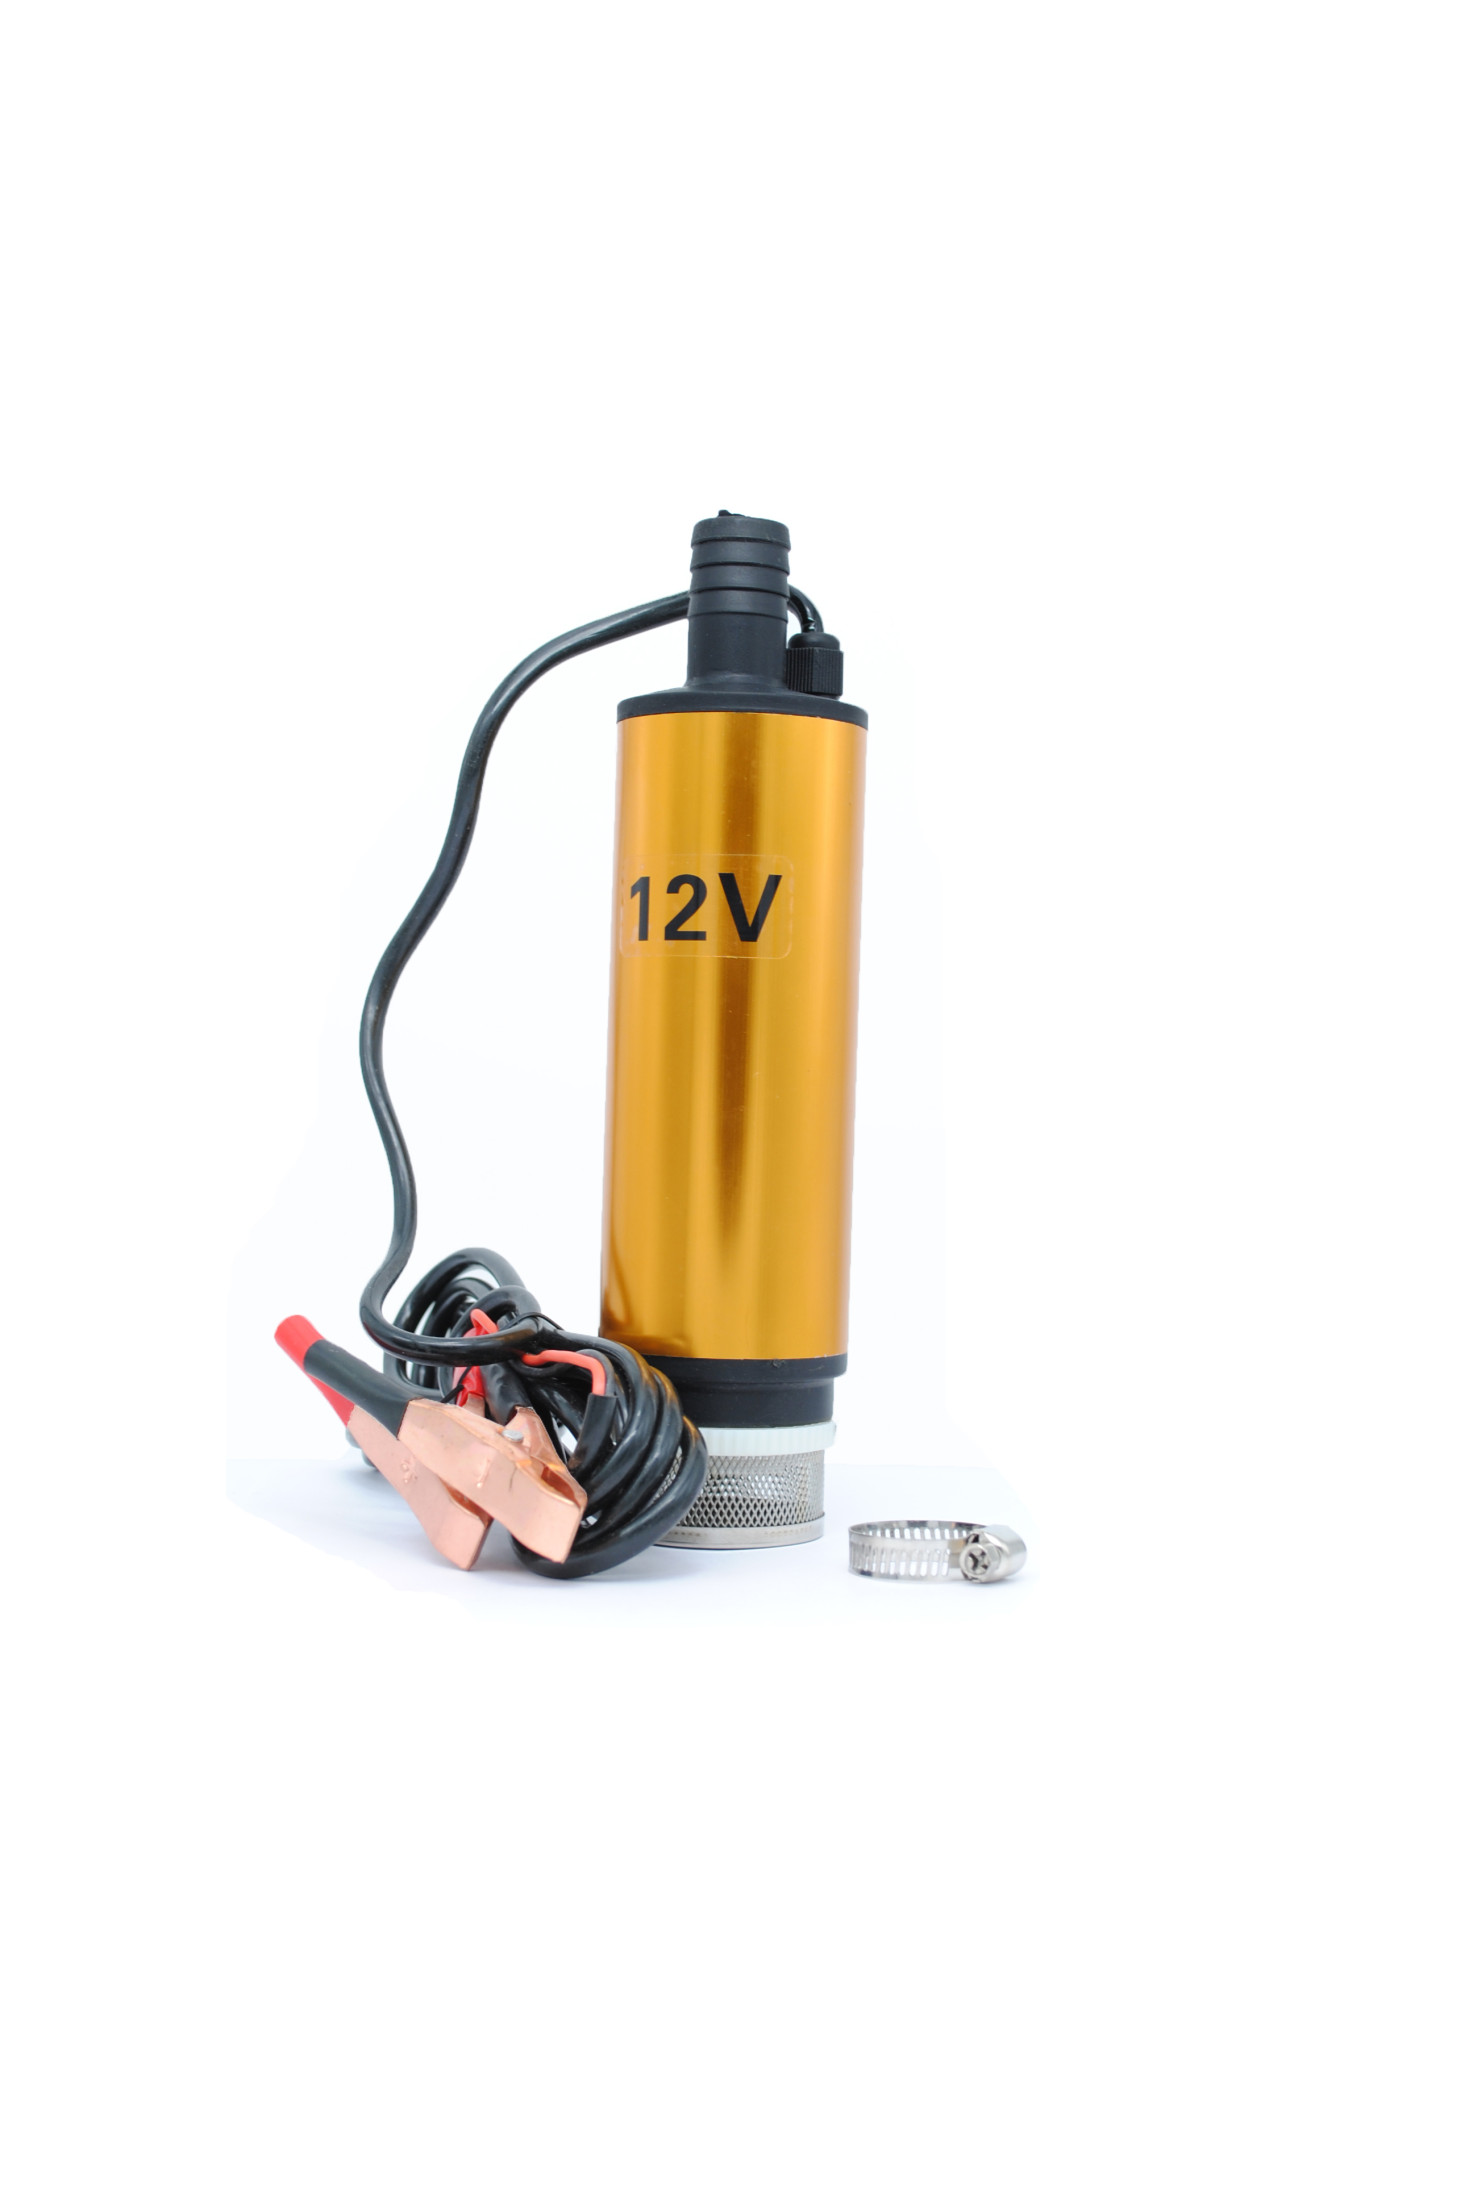 AC-023 - Погружной электронасос 12В с сетчатым фильтром для ДТ, 30 л/мин